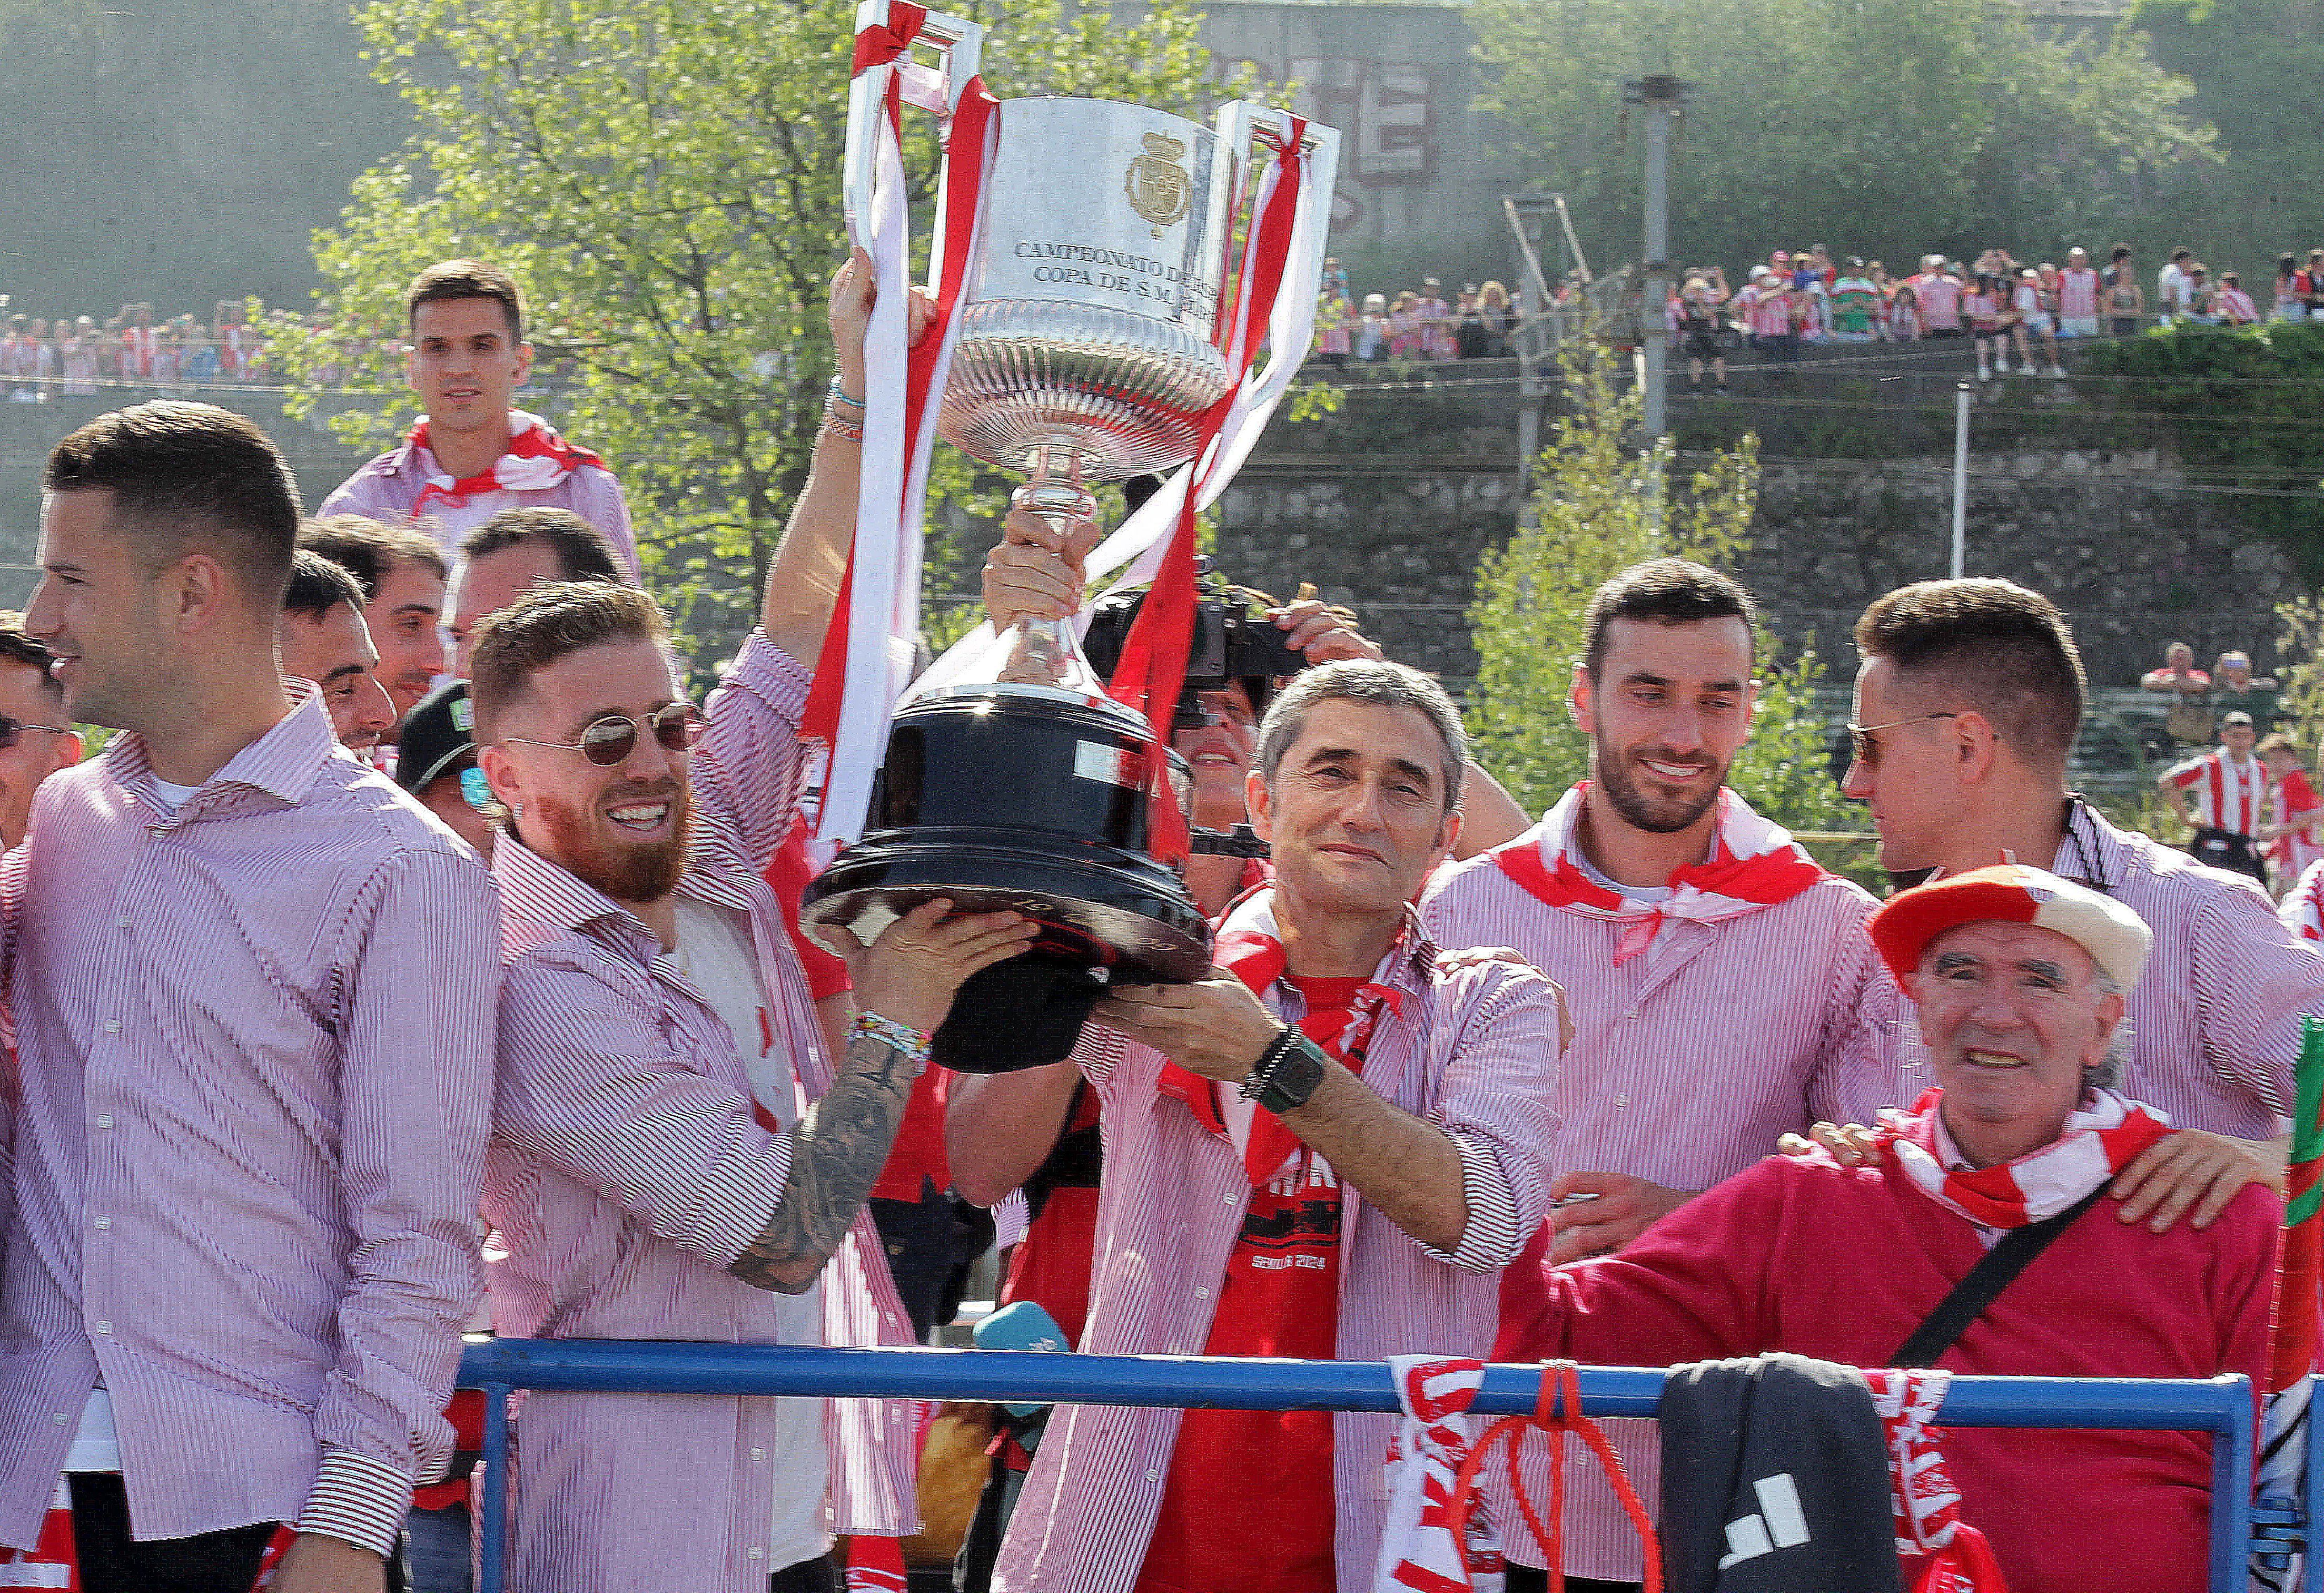 El capitán del Athletic, Iker Muniain (a la izquierda), junto a Ernesto Valverde (a la derecha), entrenador del equipo, con el trofeo de la Copa del Rey.